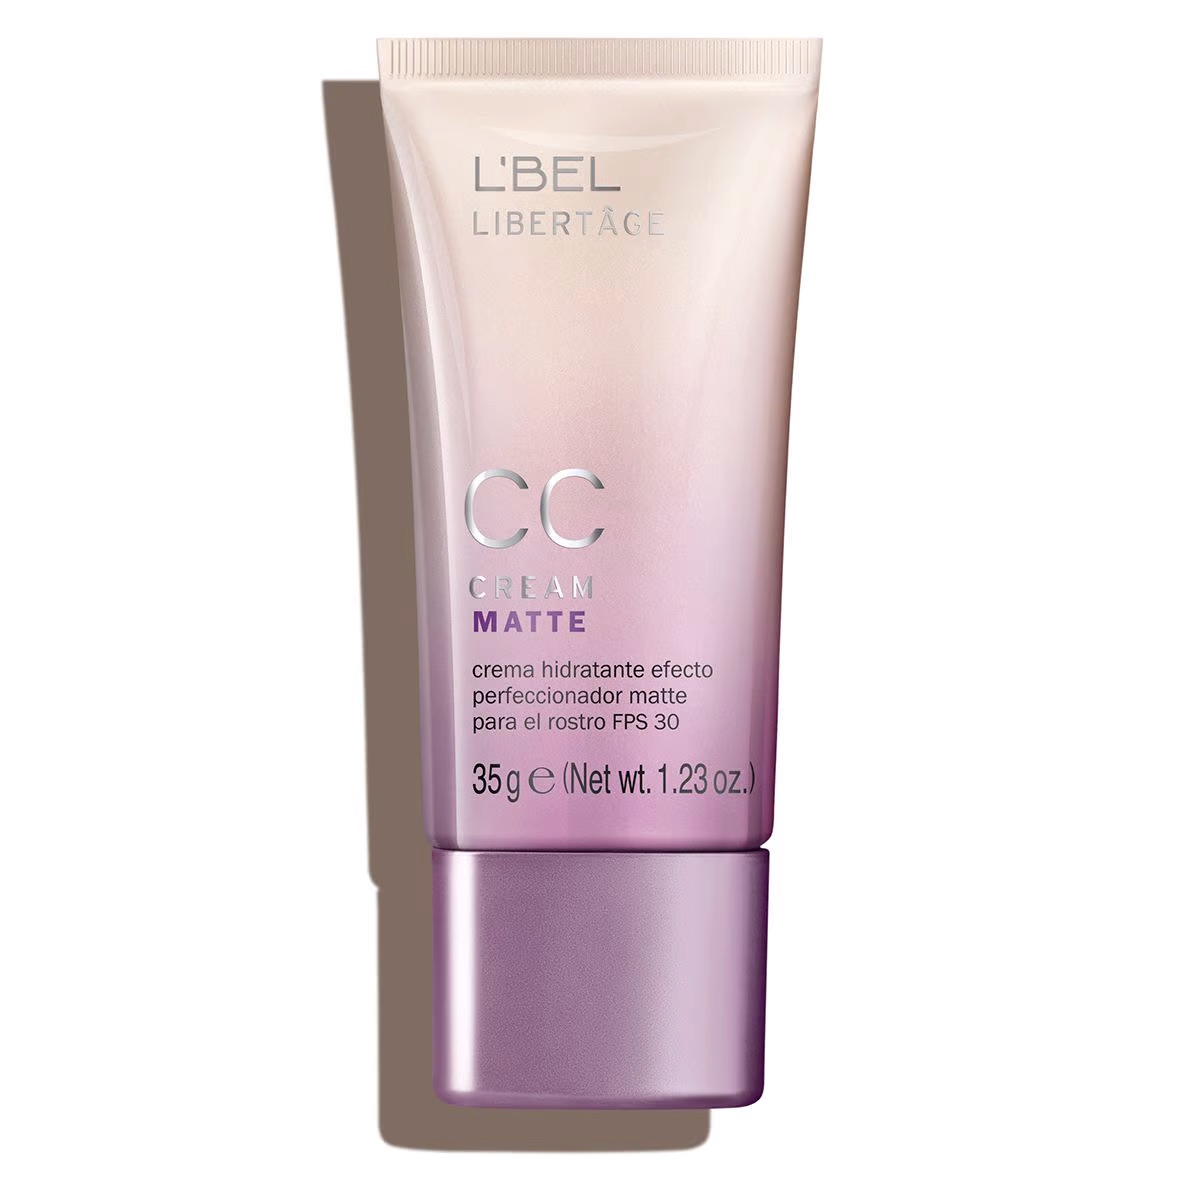 CC Cream - Crema hidratante perfeccionadora para el rostro